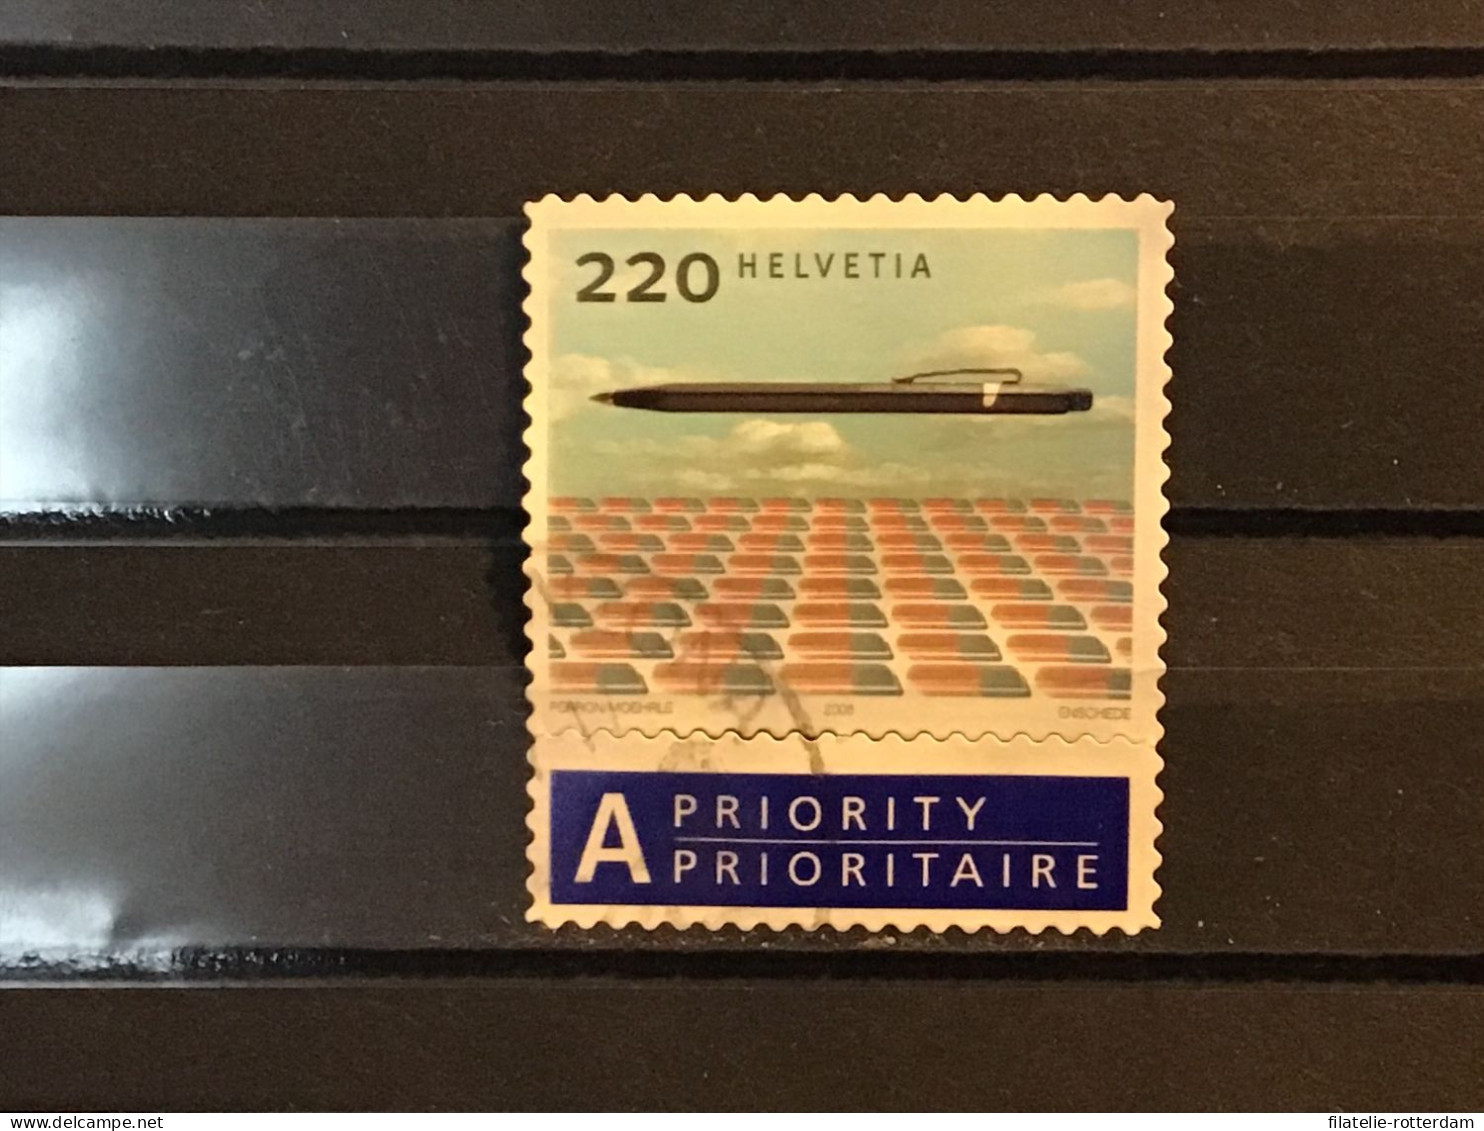 Switzerland / Zwitserland - Design (220) 2008 - Used Stamps